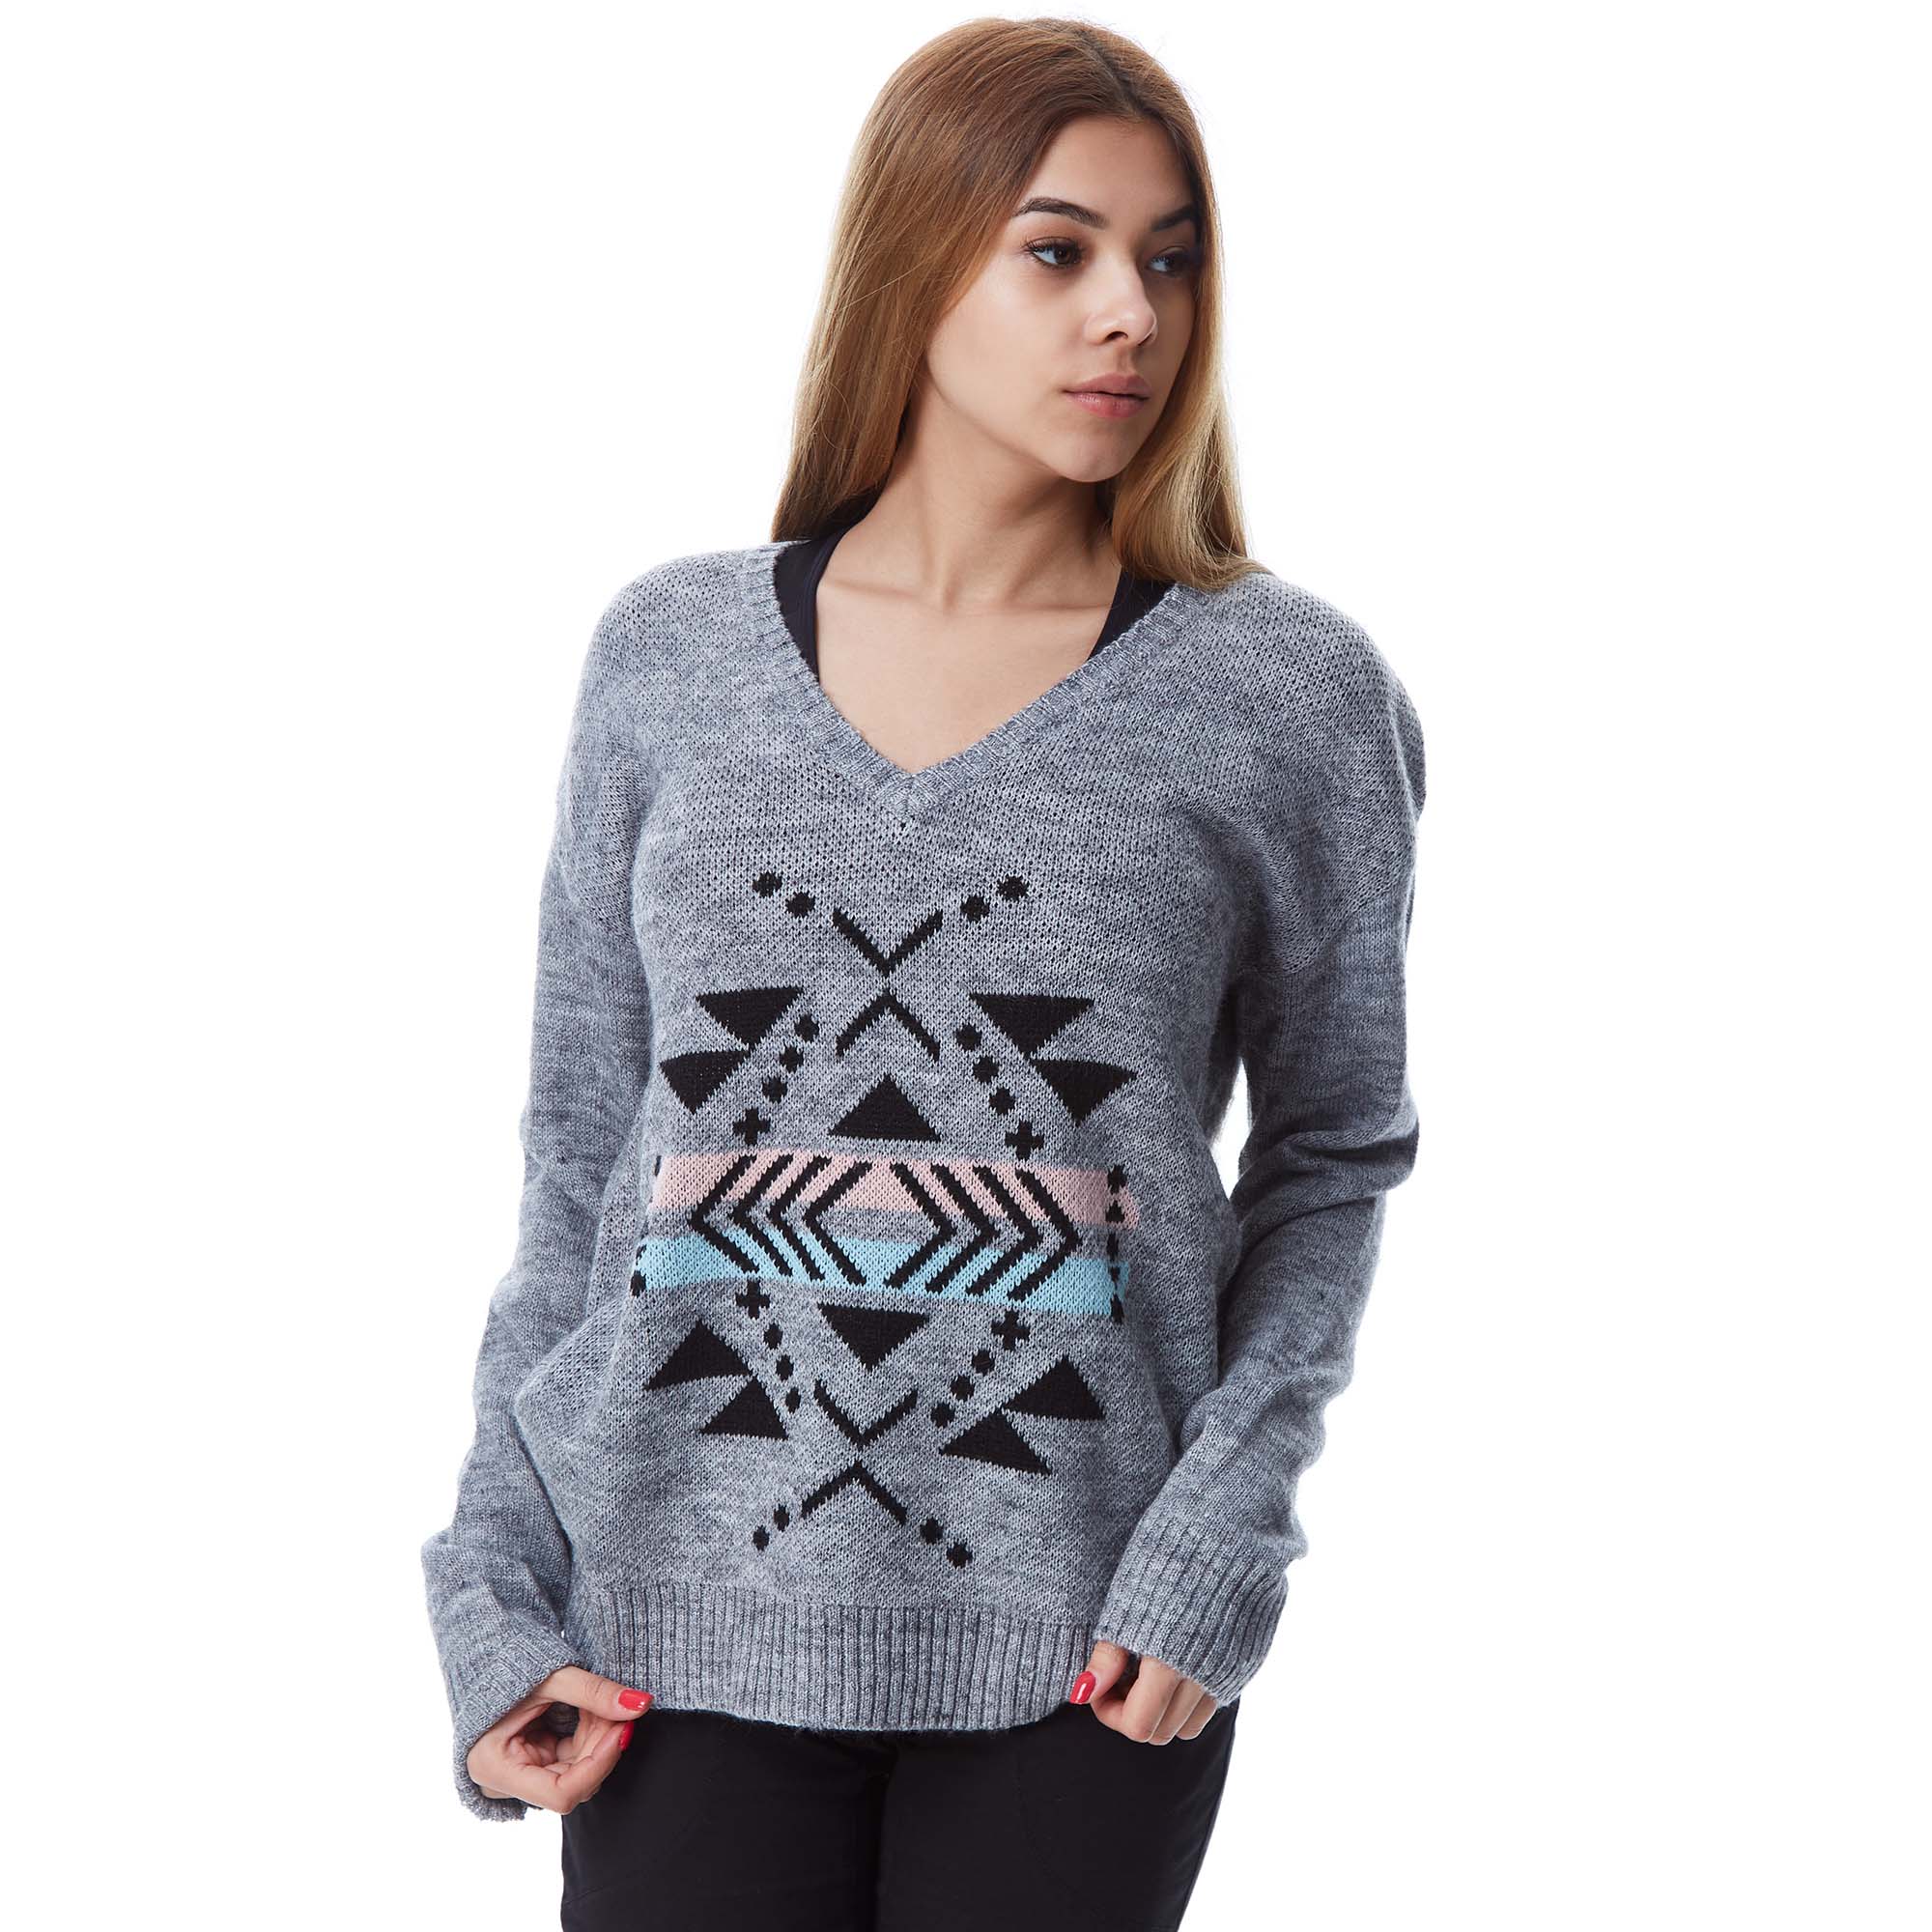 Passenger Sycamore Knitted Sweater Women's V-neck Jumper